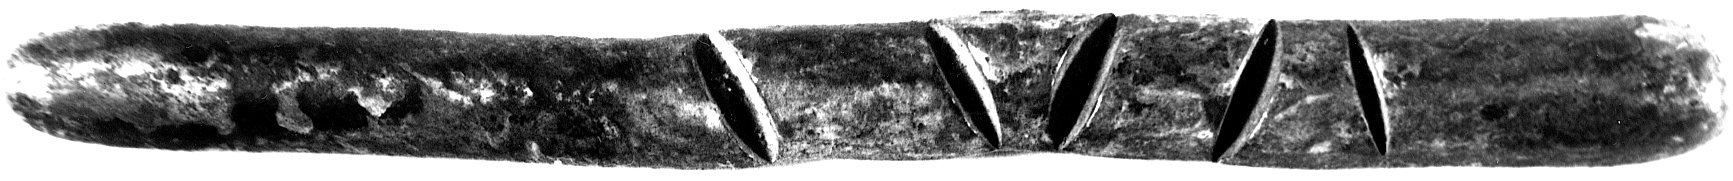 sztabka litewska starszy typ, j.w., obły pręt z 5 nacięciami długości 144 mm, waga 102.77 g., Kiersnowski j.w.,stara patyna